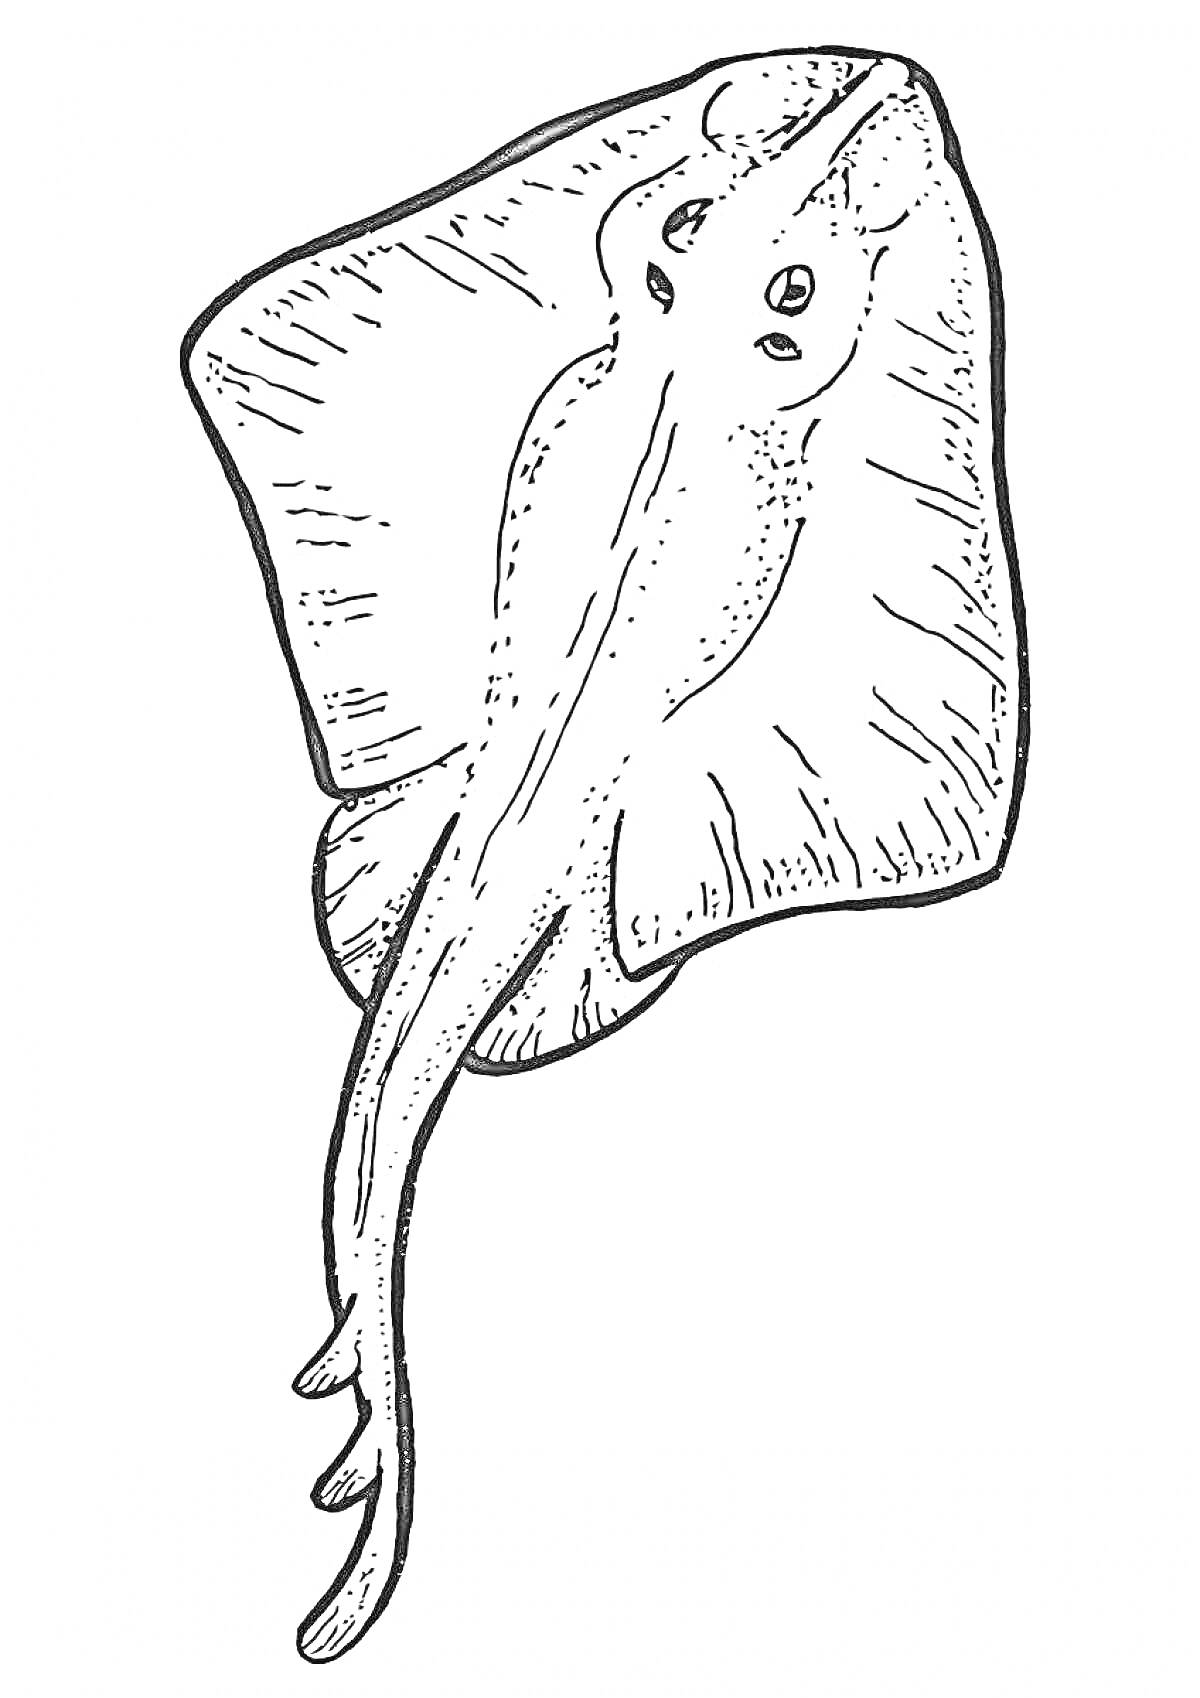 РаскраскаРаскраска: Скат с размашистыми плавниками и длинным хвостом